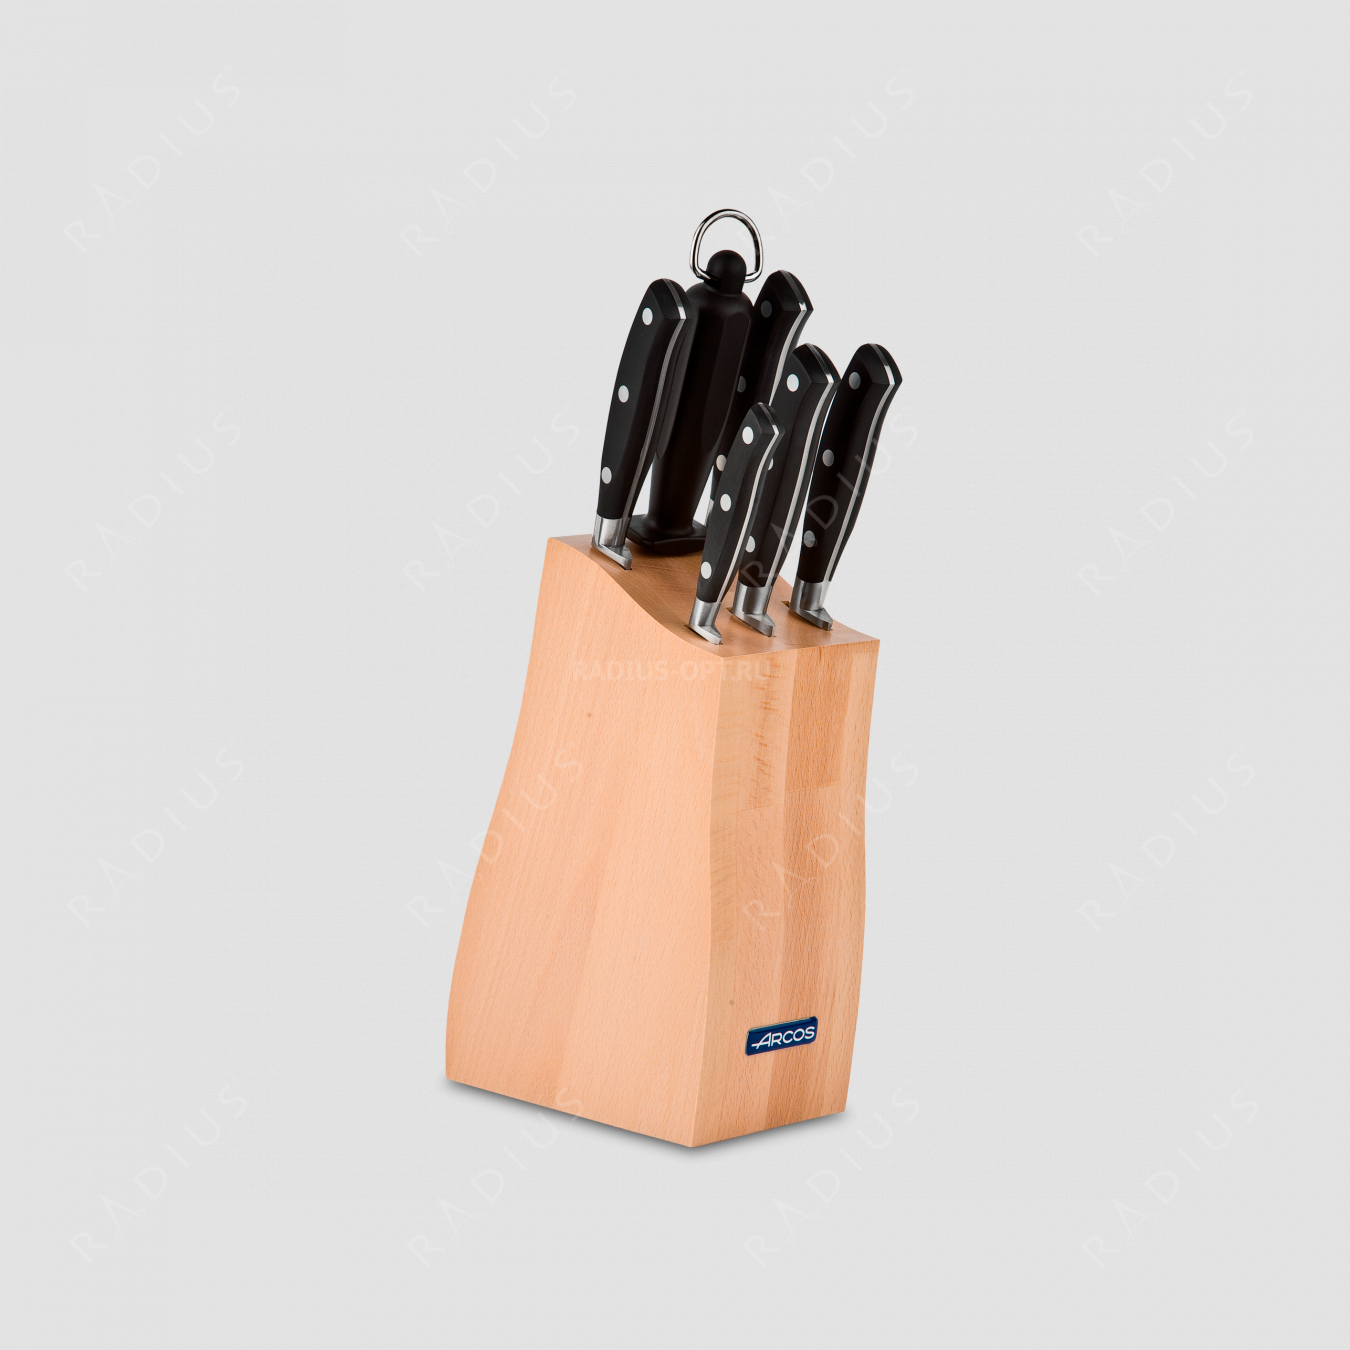 Набор кухонных ножей 6 предметов в подставке, серия Rivera, ARCOS, Испания